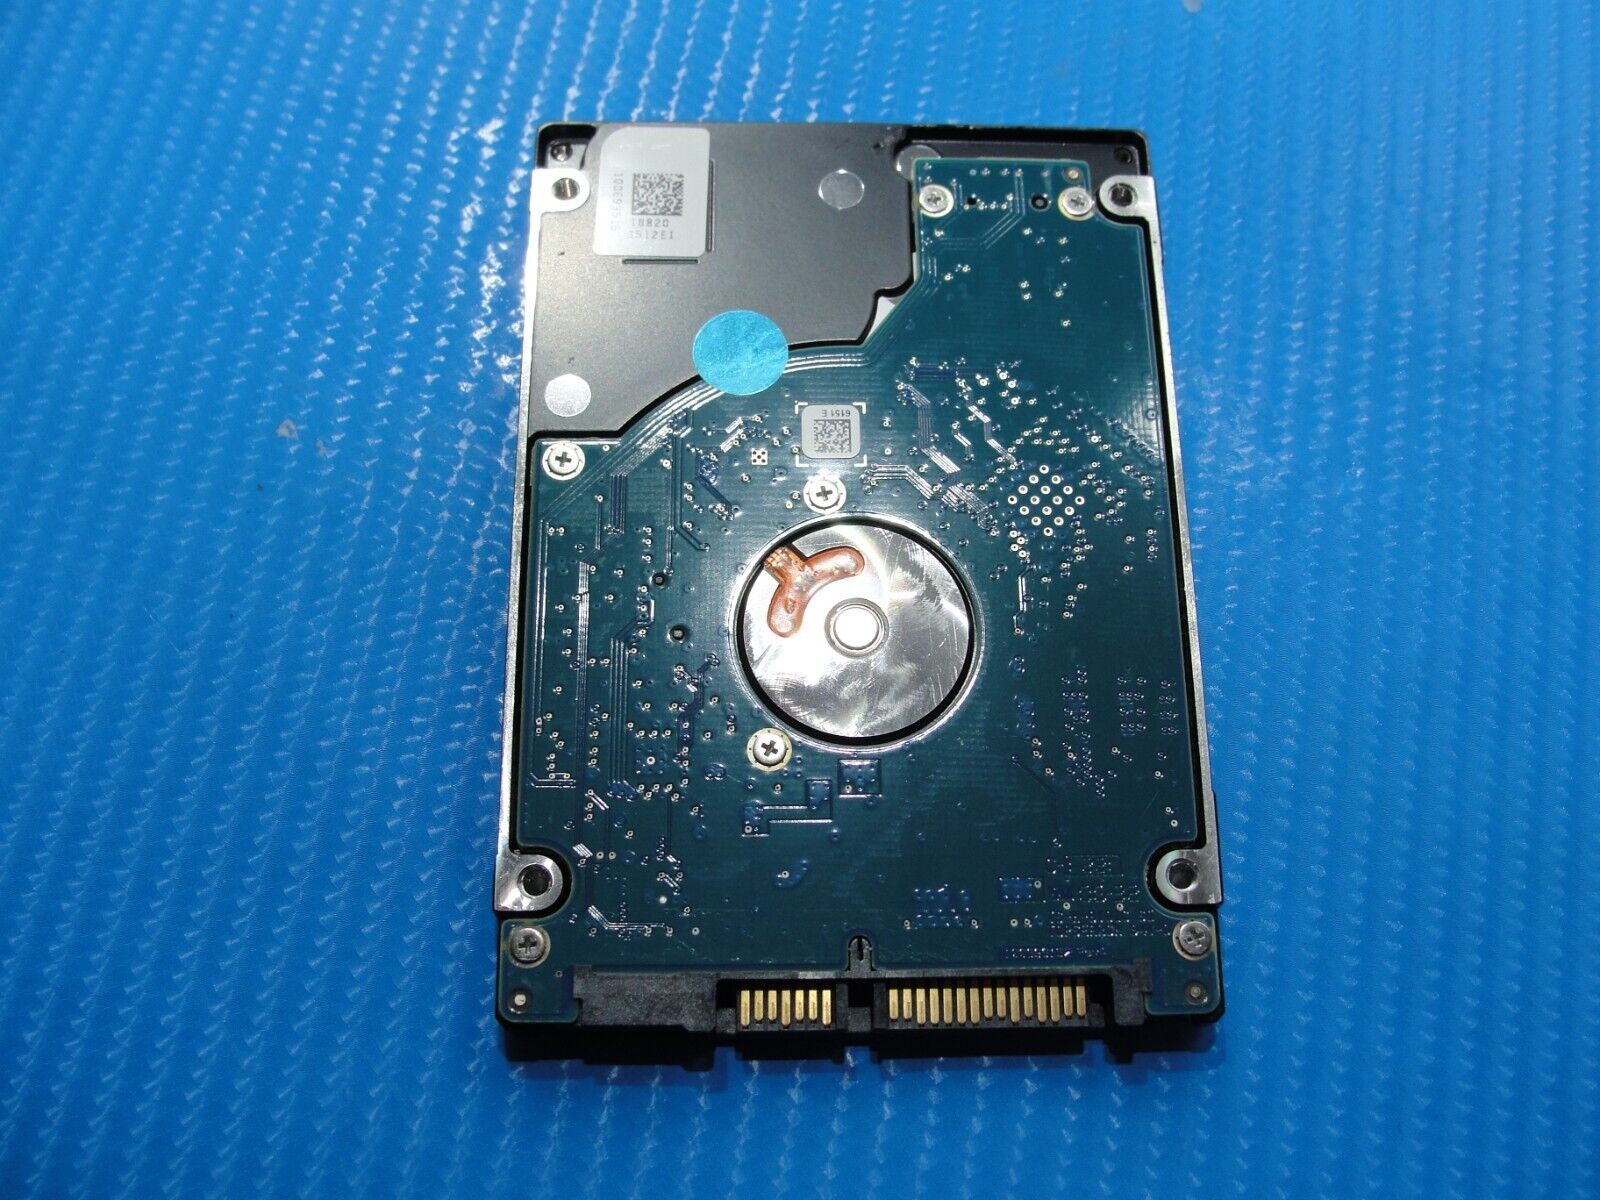 Asus VivoBook X202E-DH31T Seagate 500GB SATA 2.5